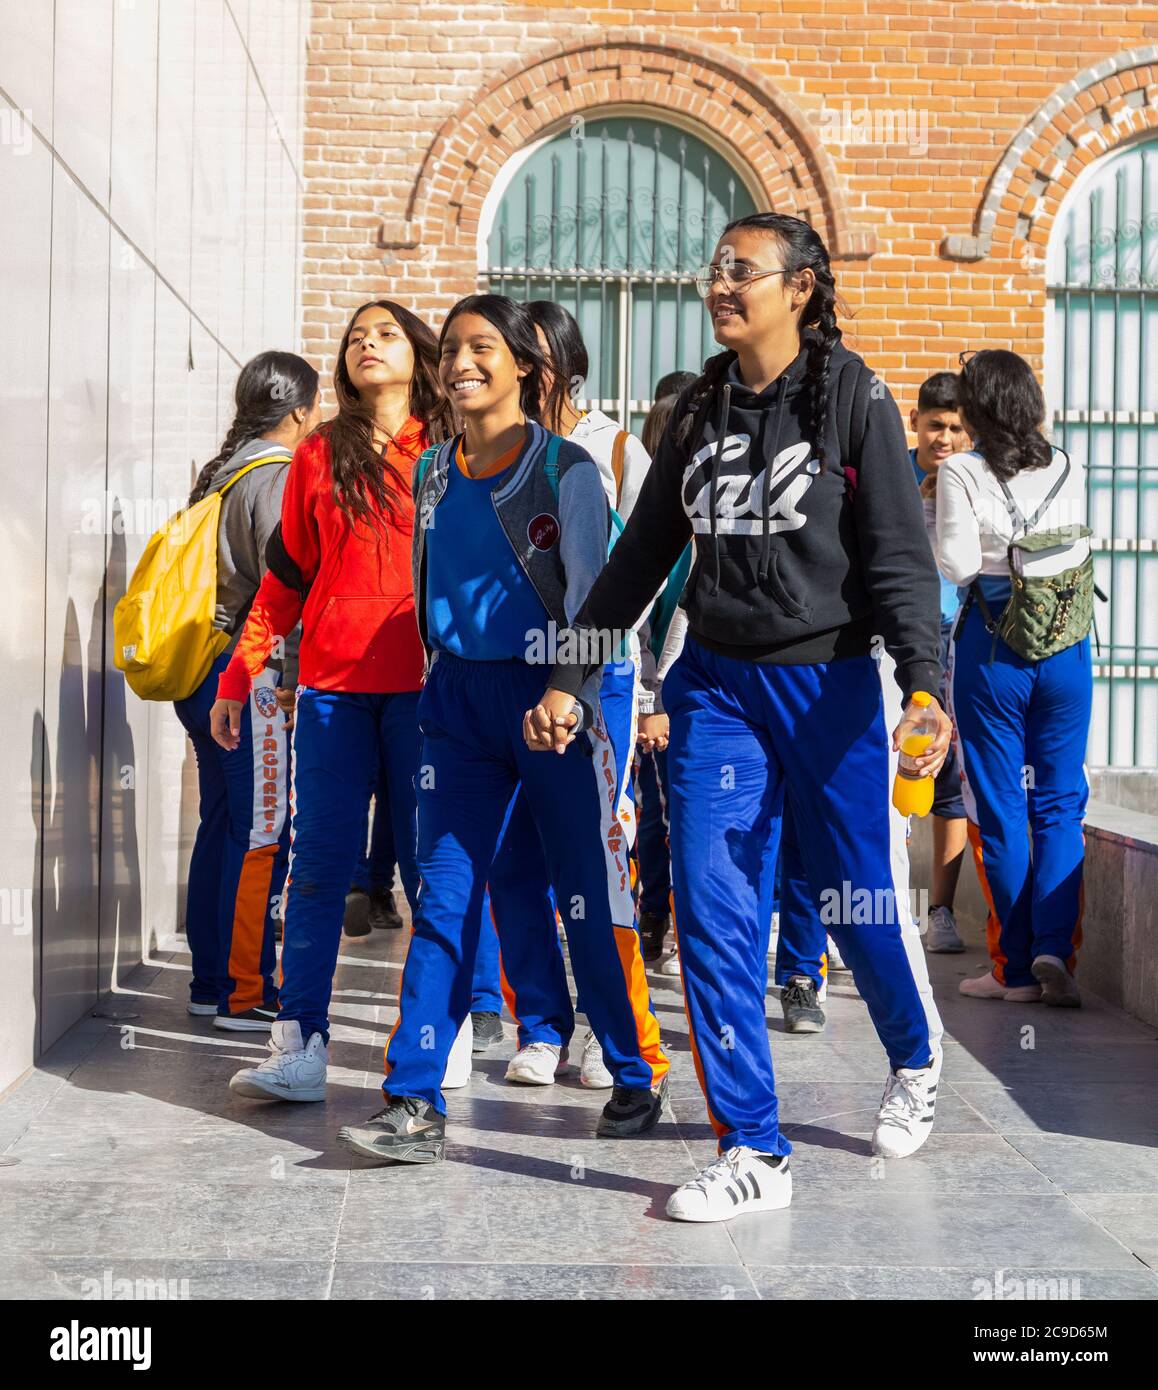 Ciudad Juárez, Chihuahua, México. Escuela Secundaria Mexicana estudiantes que visitan el Museo de la Revolución en la Frontera. Foto de stock